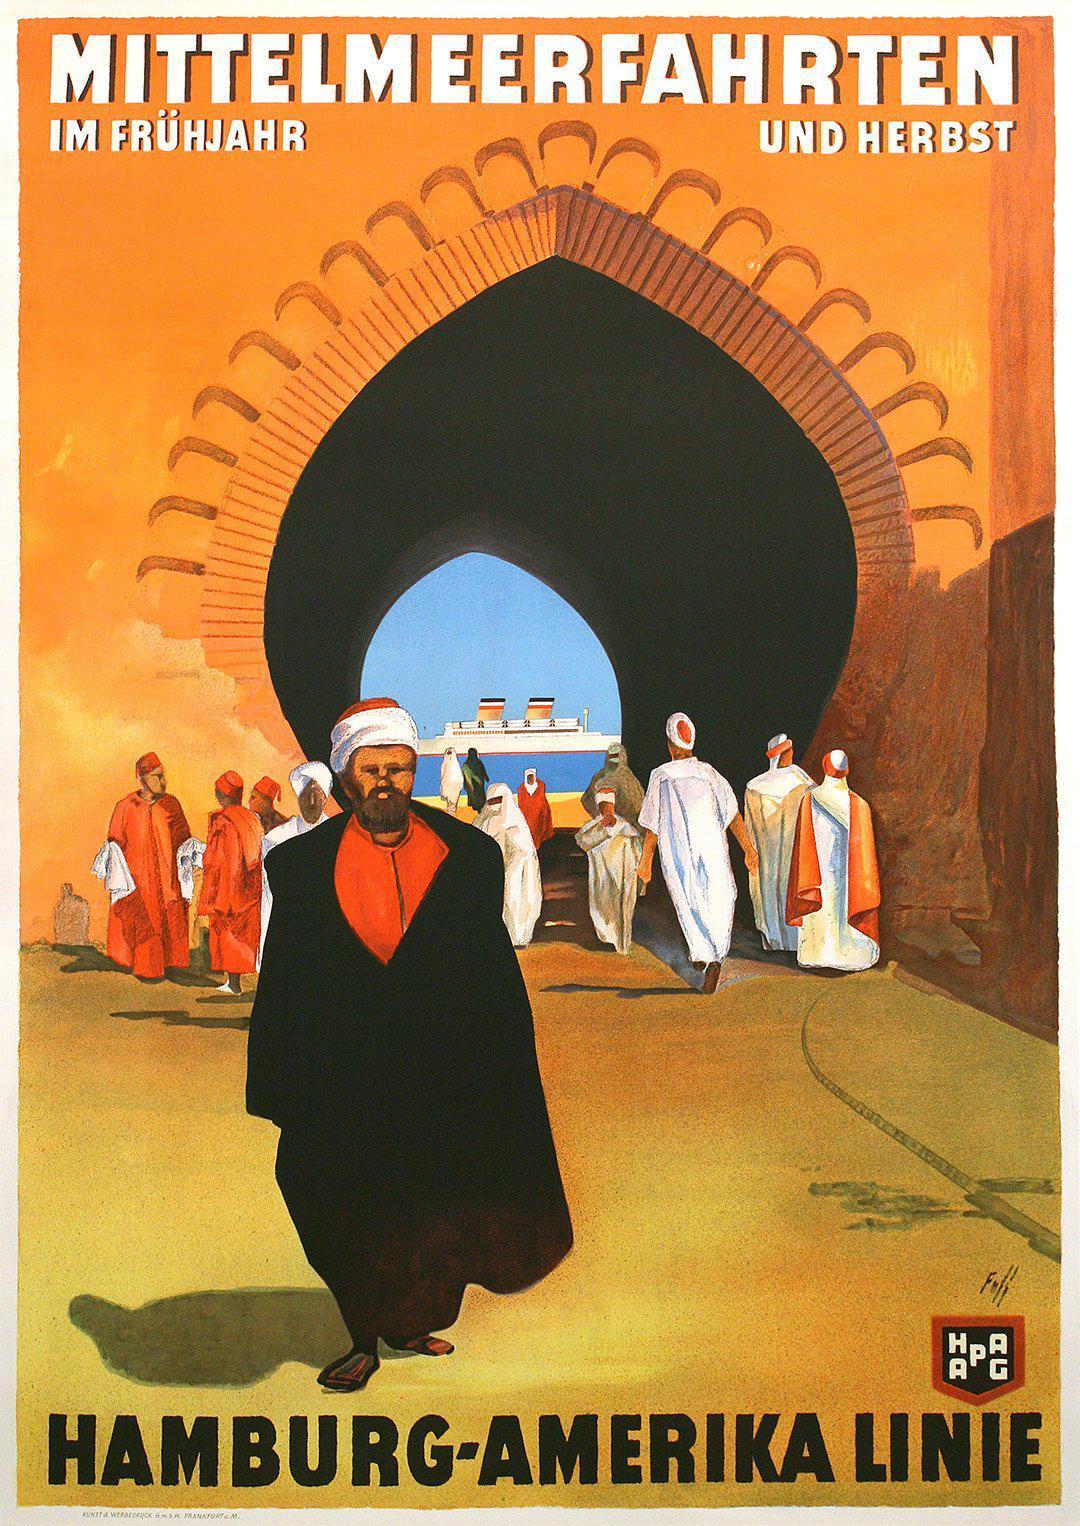 Original Vintage Hamburg Amerika Line Mittelmeerfahrten Travel Poster North Africa c1935 by Albert Fuss